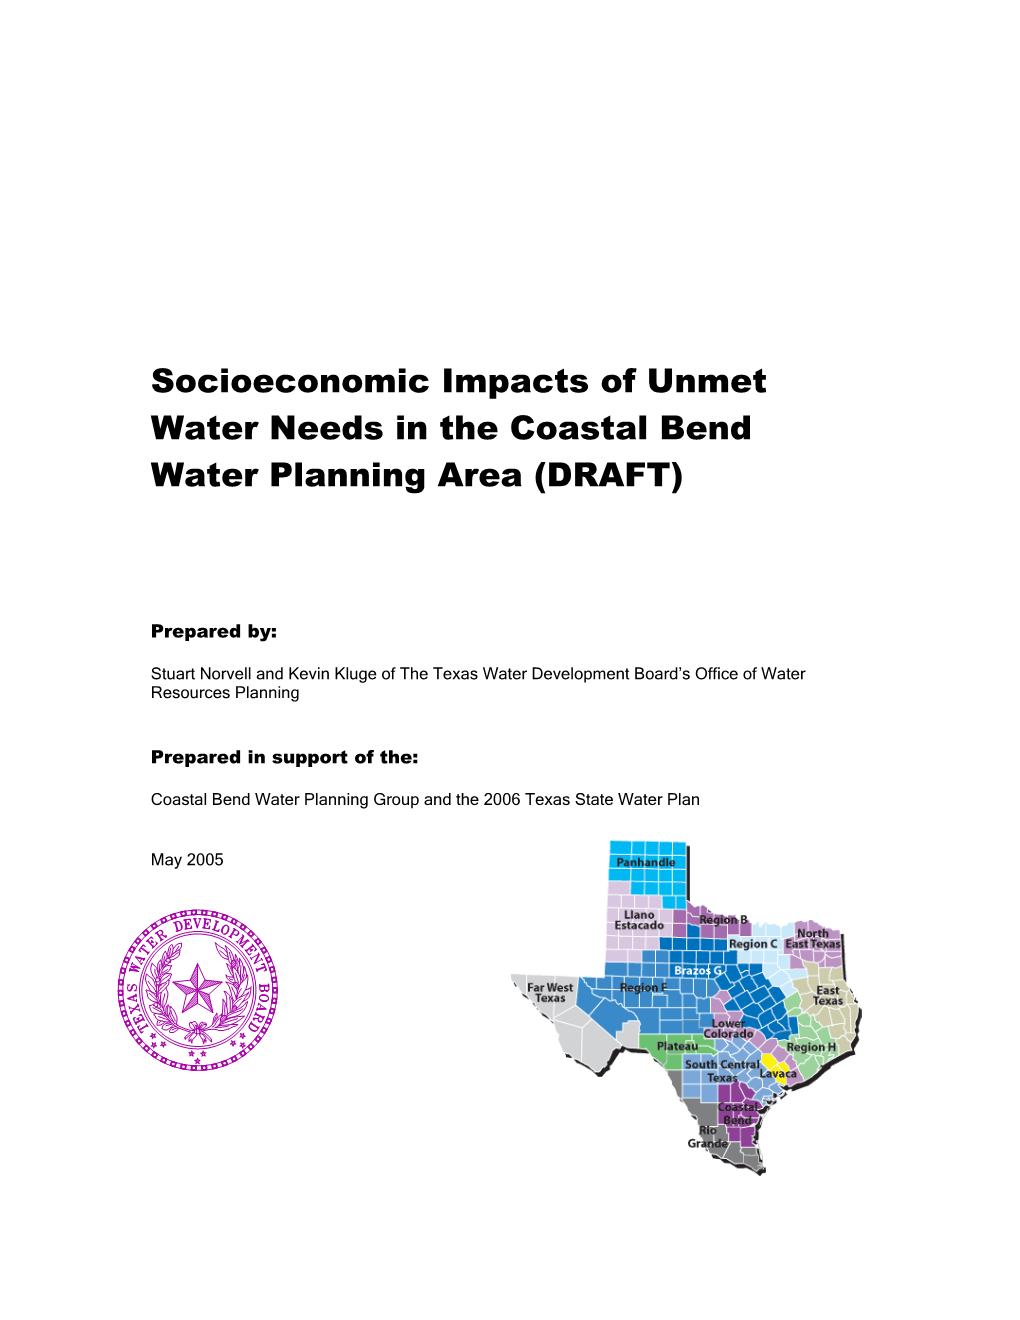 Socioeconomic Impacts of Unmet Water Needs in the Coastal Bend Water Planning Area